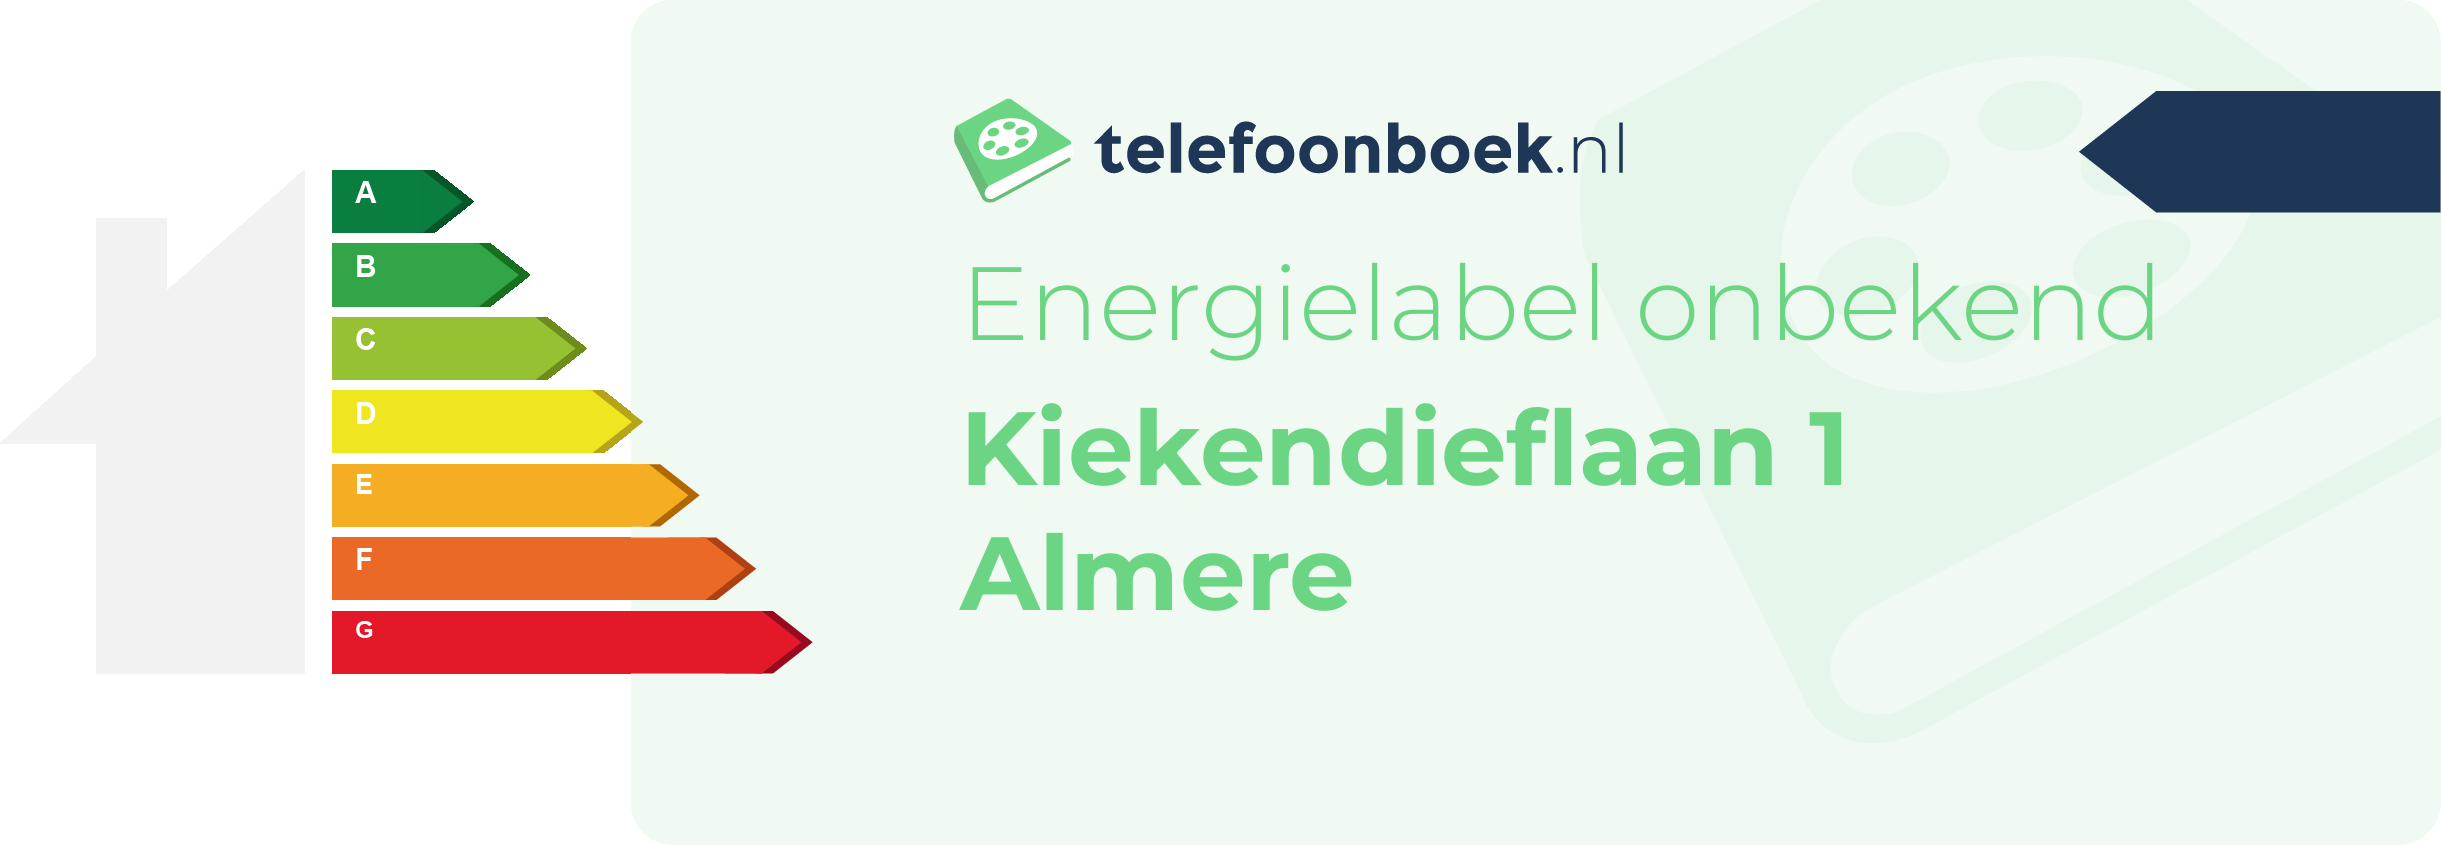 Energielabel Kiekendieflaan 1 Almere